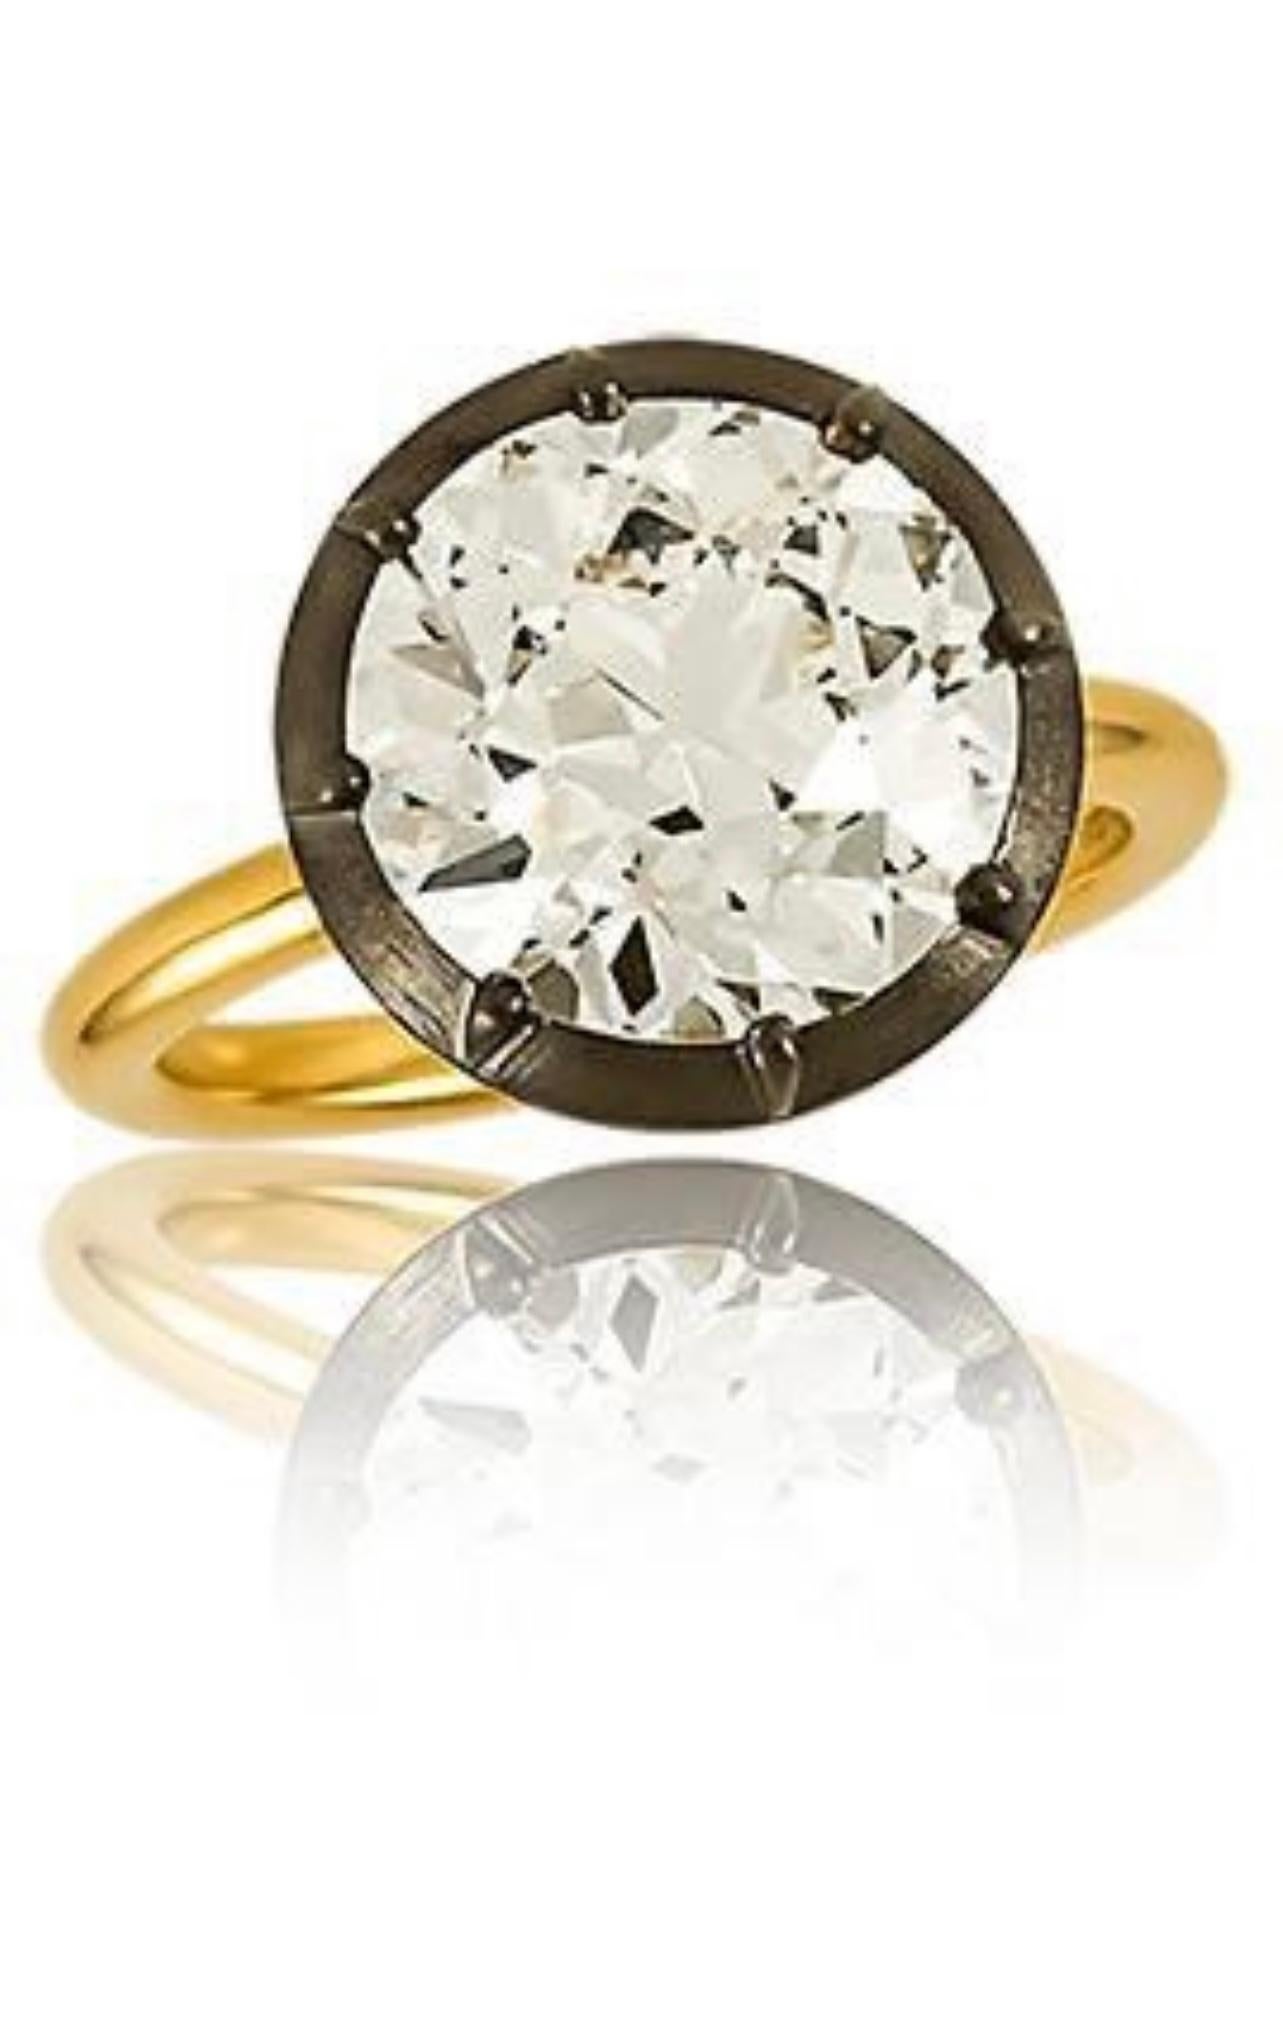 Une beauté à couper le souffle ! 

Bague de fiançailles en diamant européen brillant certifié GIA de 5,14 carats, magnifiquement travaillée à la main en or jaune 18k et en argent. 

Les détails sont les suivants : 
Diamant brillant de type européen